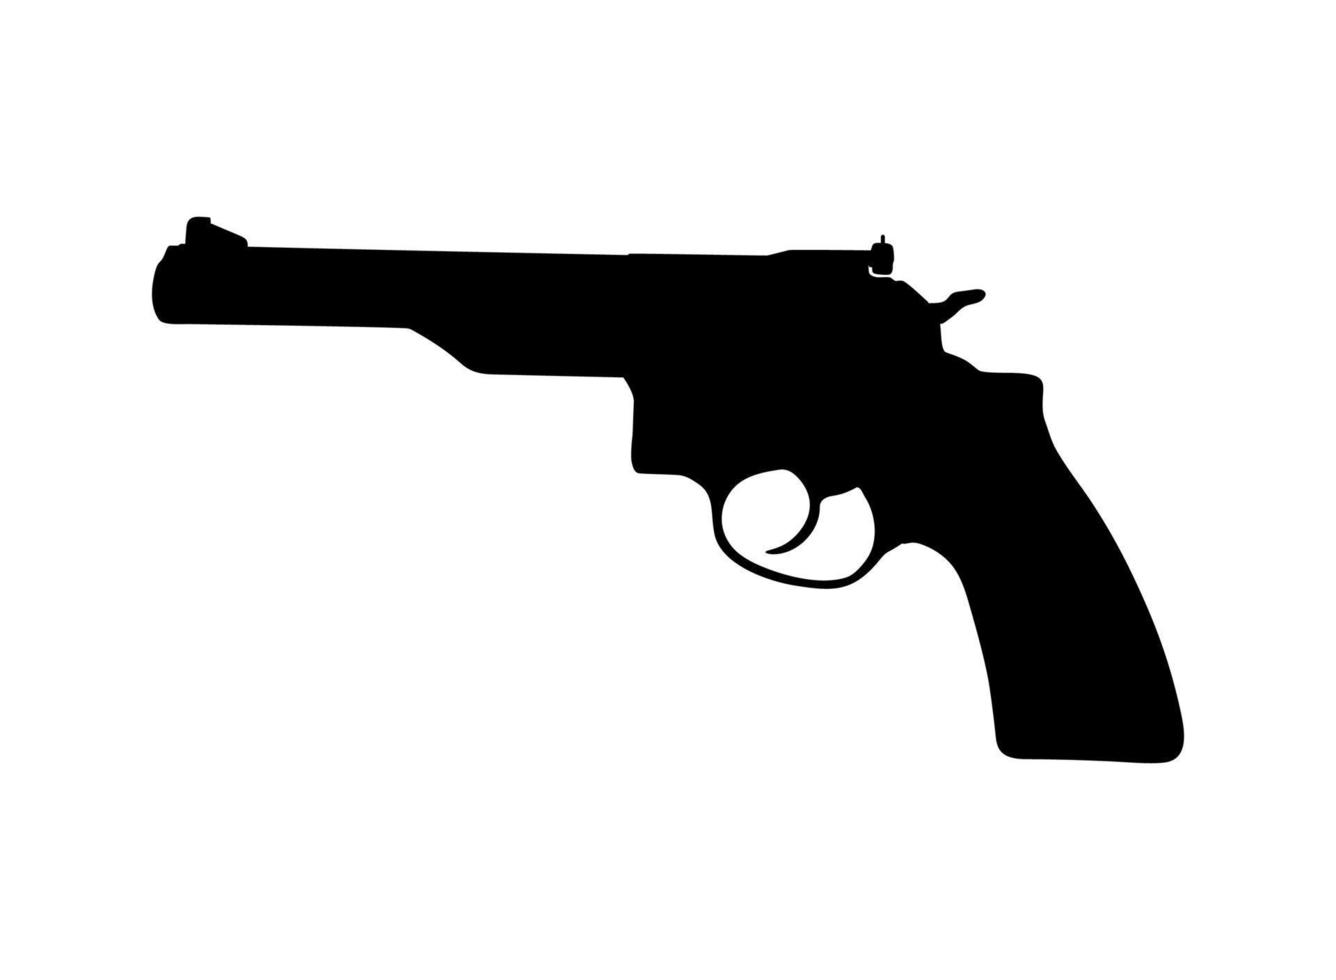 silueta de pistola, pistola para logotipo, pictograma, sitio web o elemento de diseño gráfico. ilustración vectorial vector